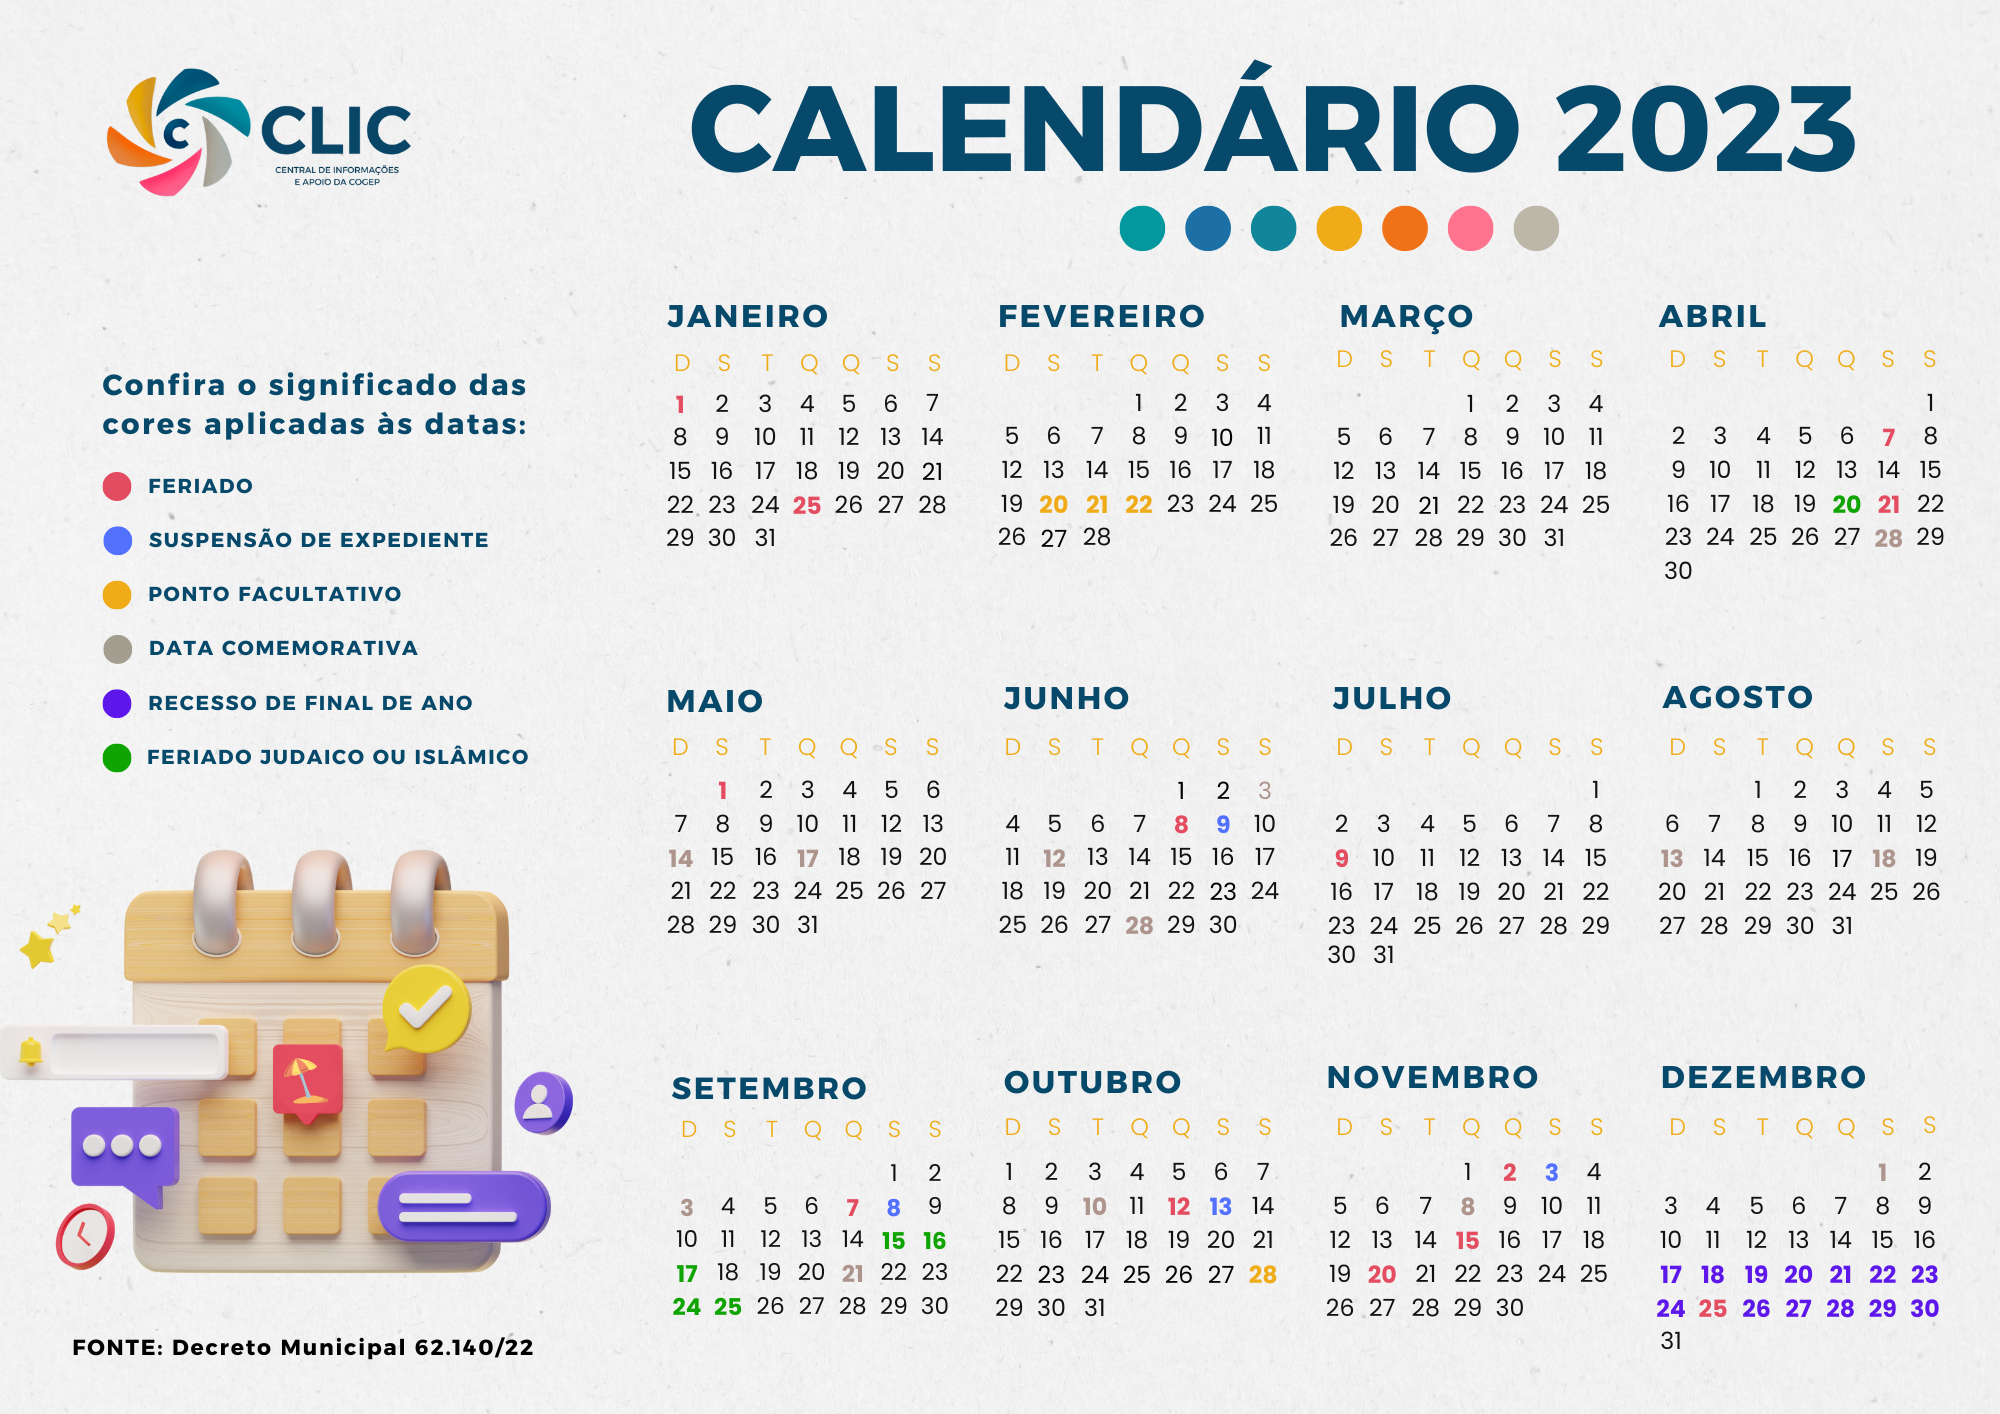 Conheça as datas comemorativas e feriados de agosto de 2022